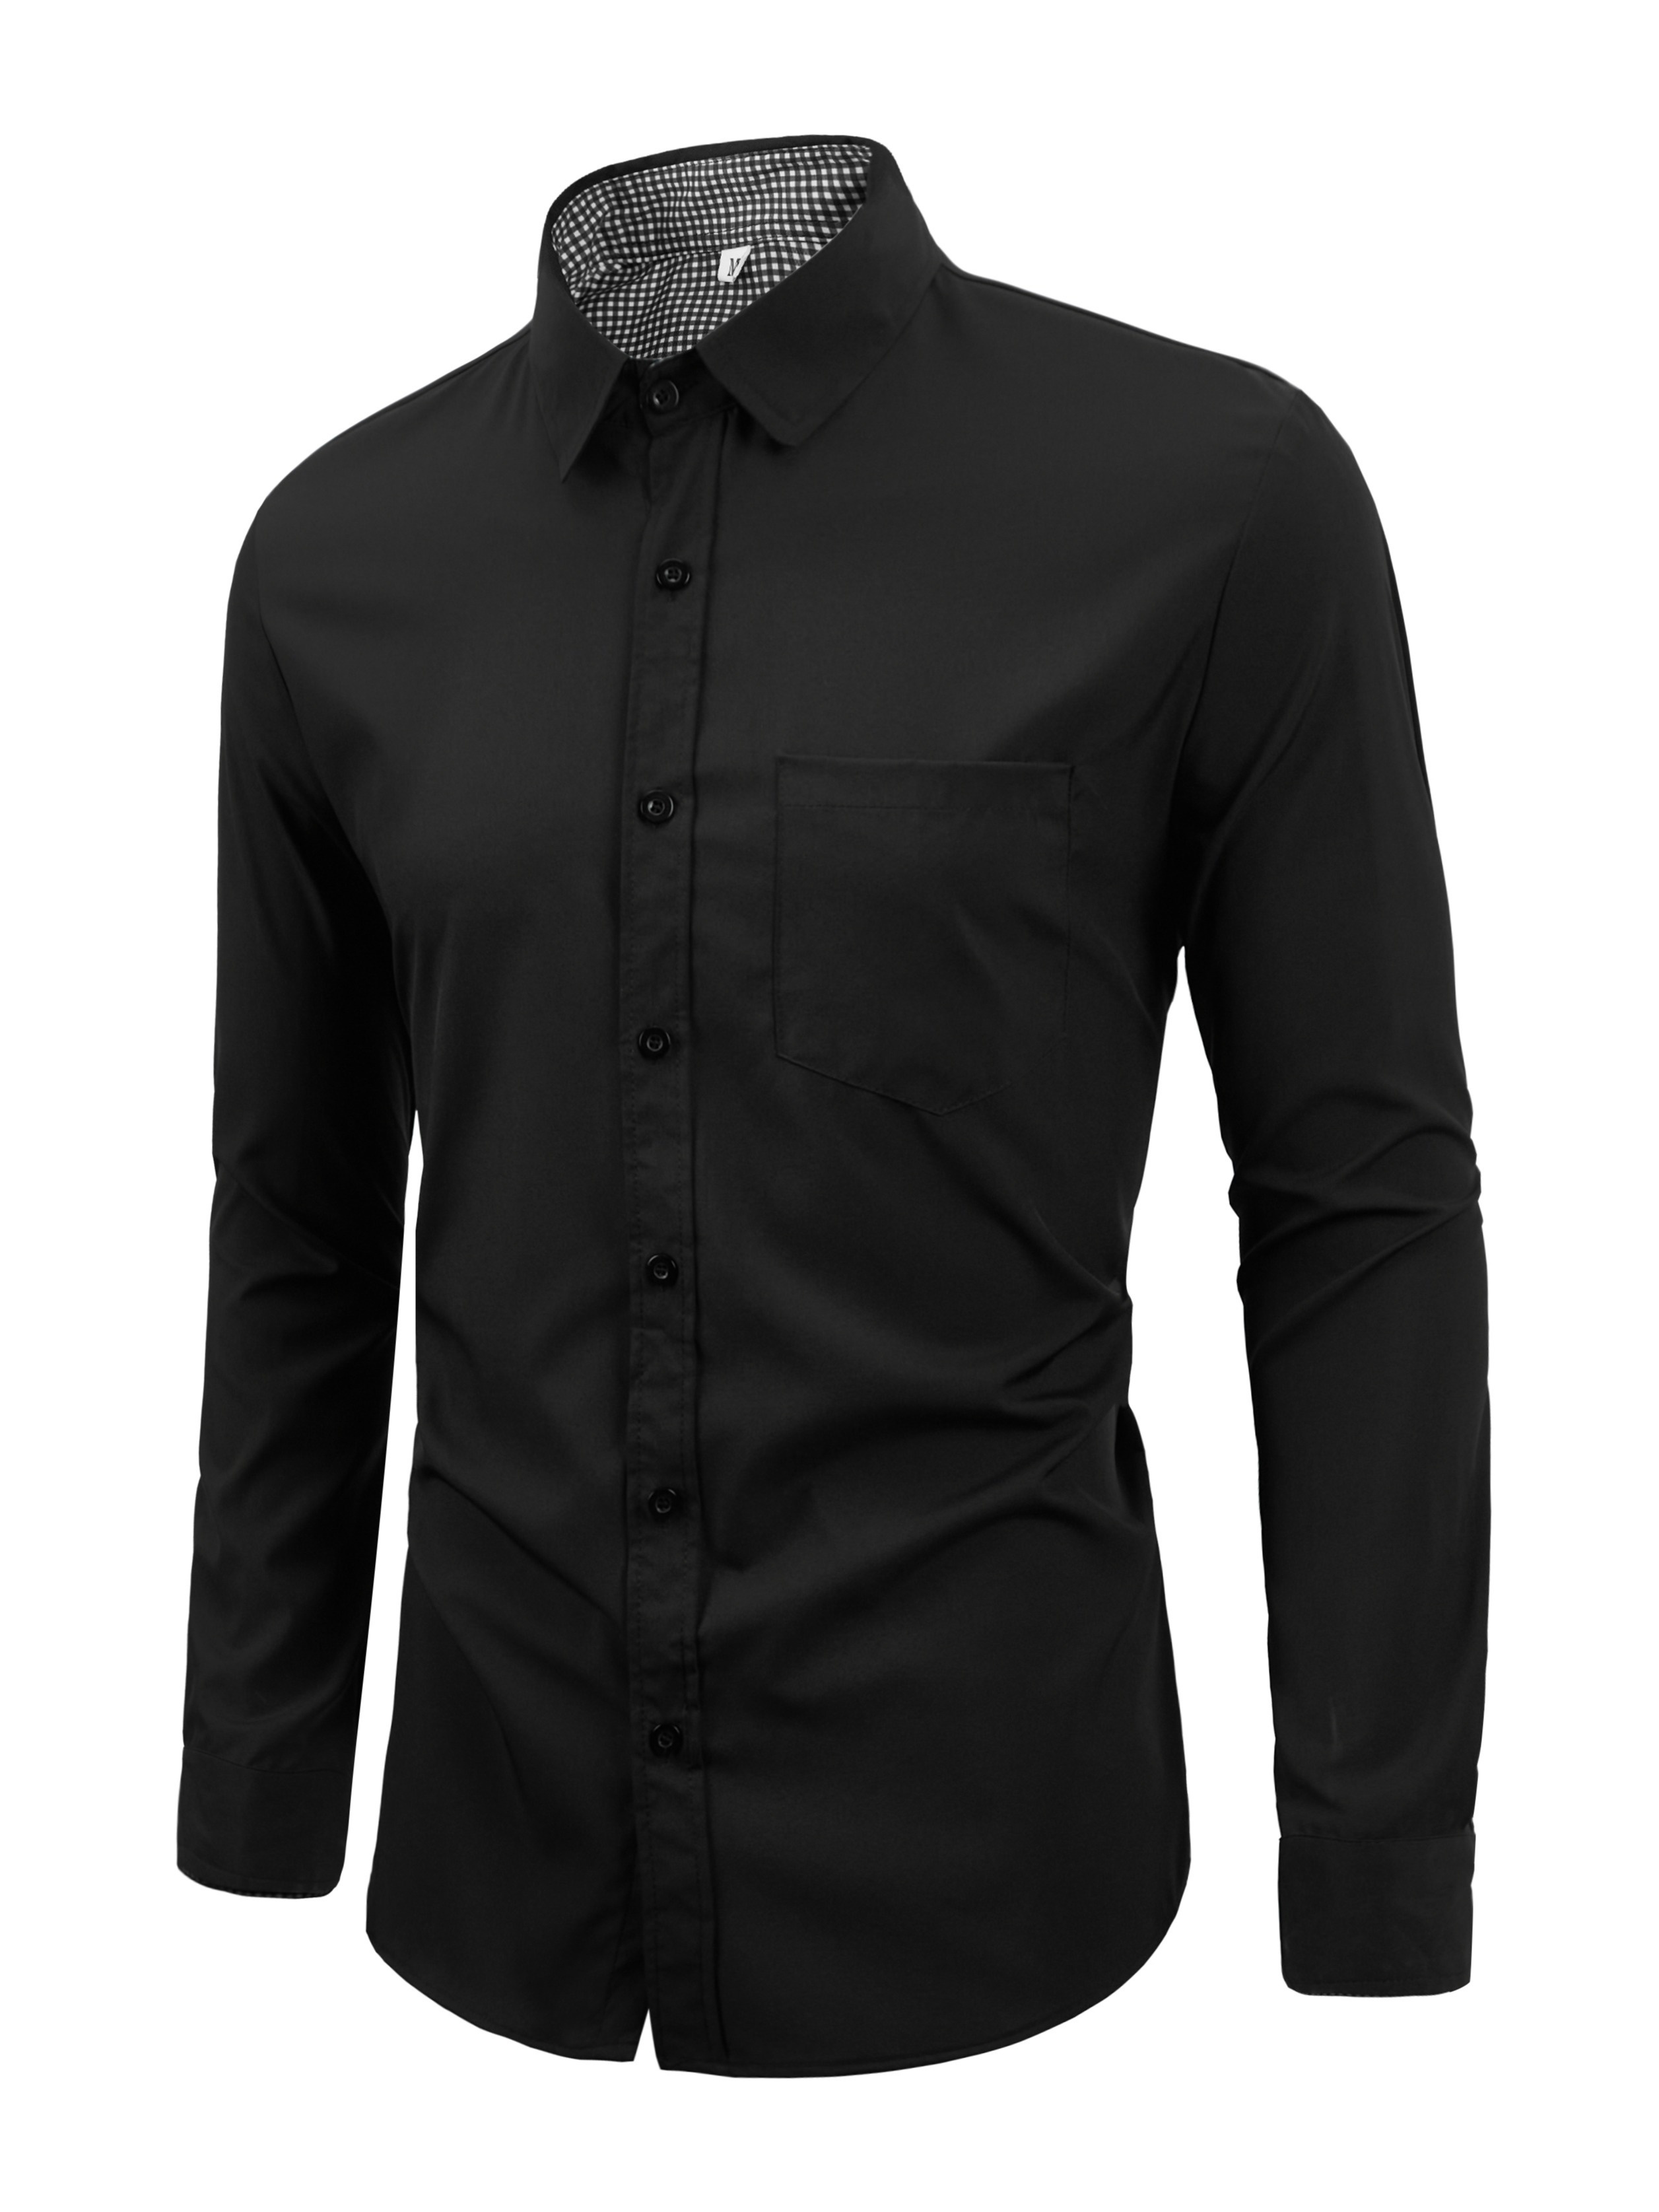 Las mejores ofertas en Camisas Negras para hombres